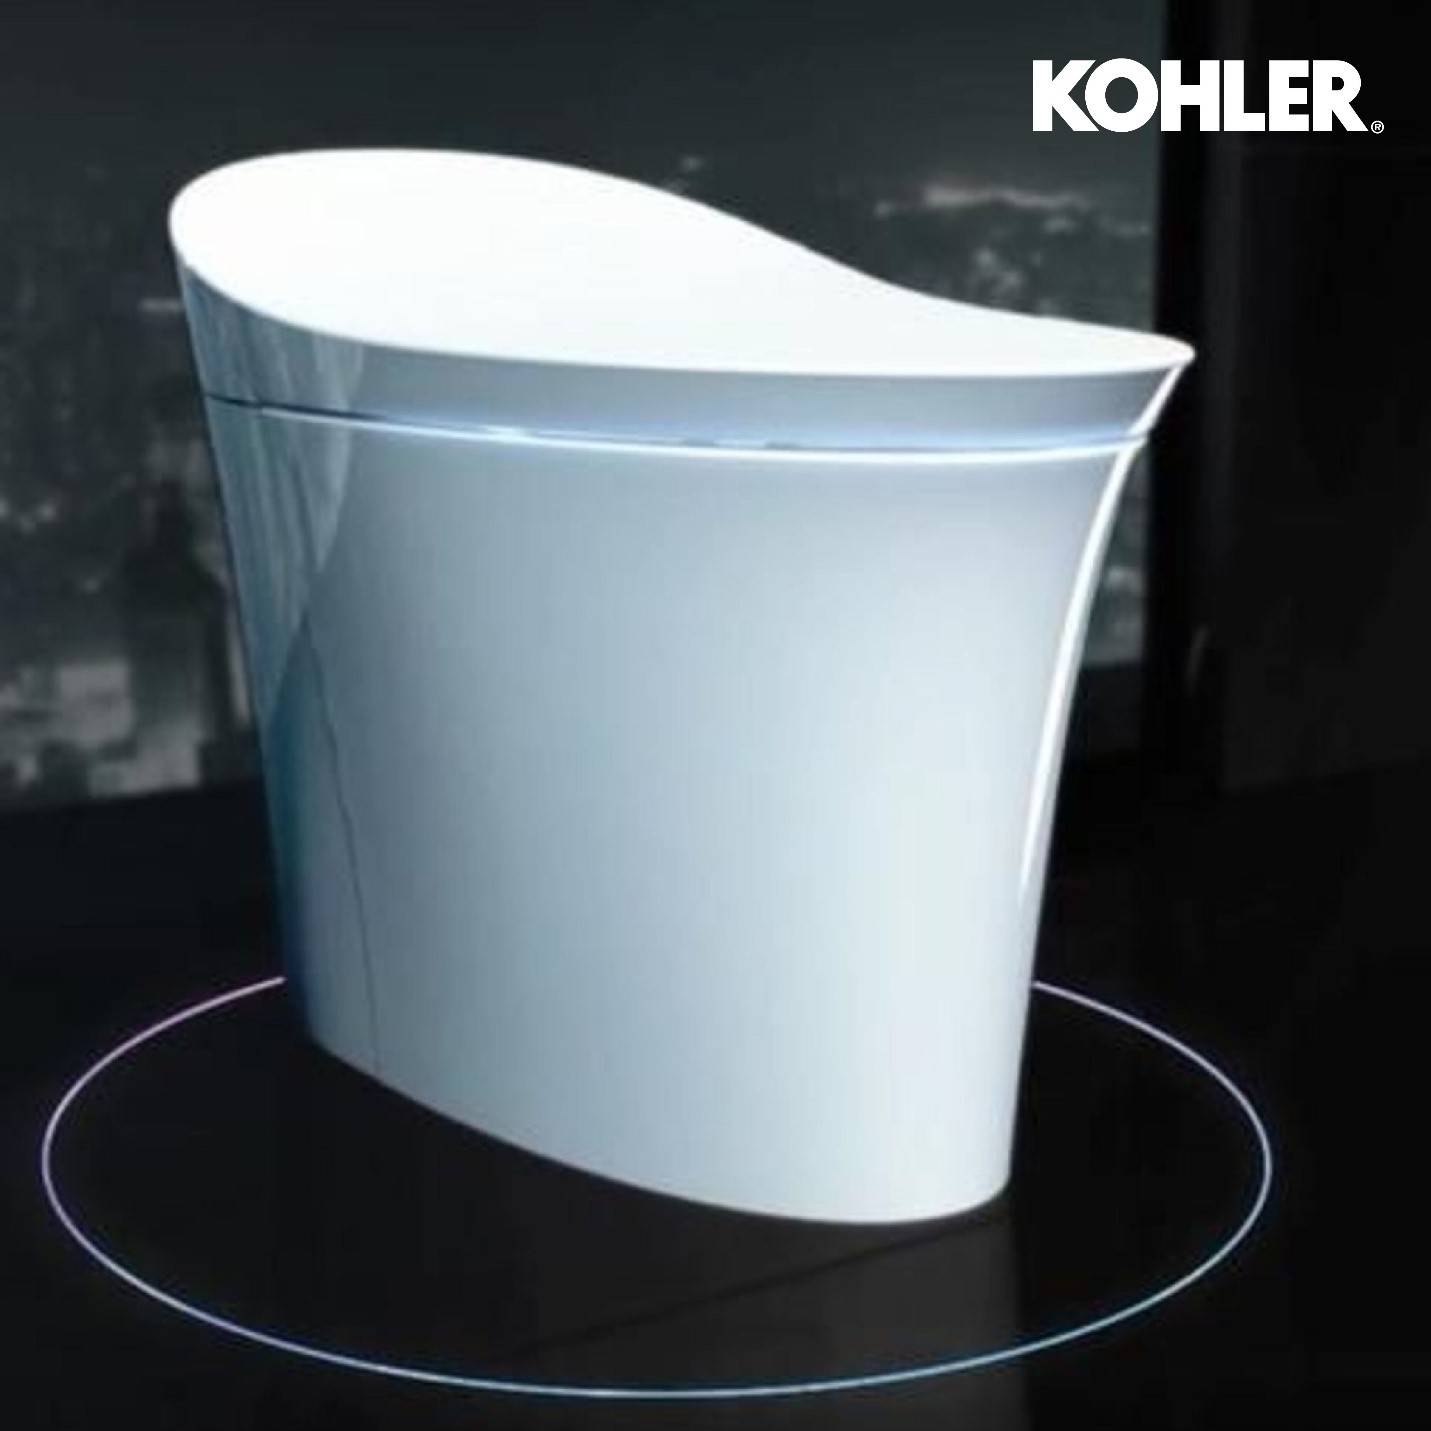 Kohler Veil model